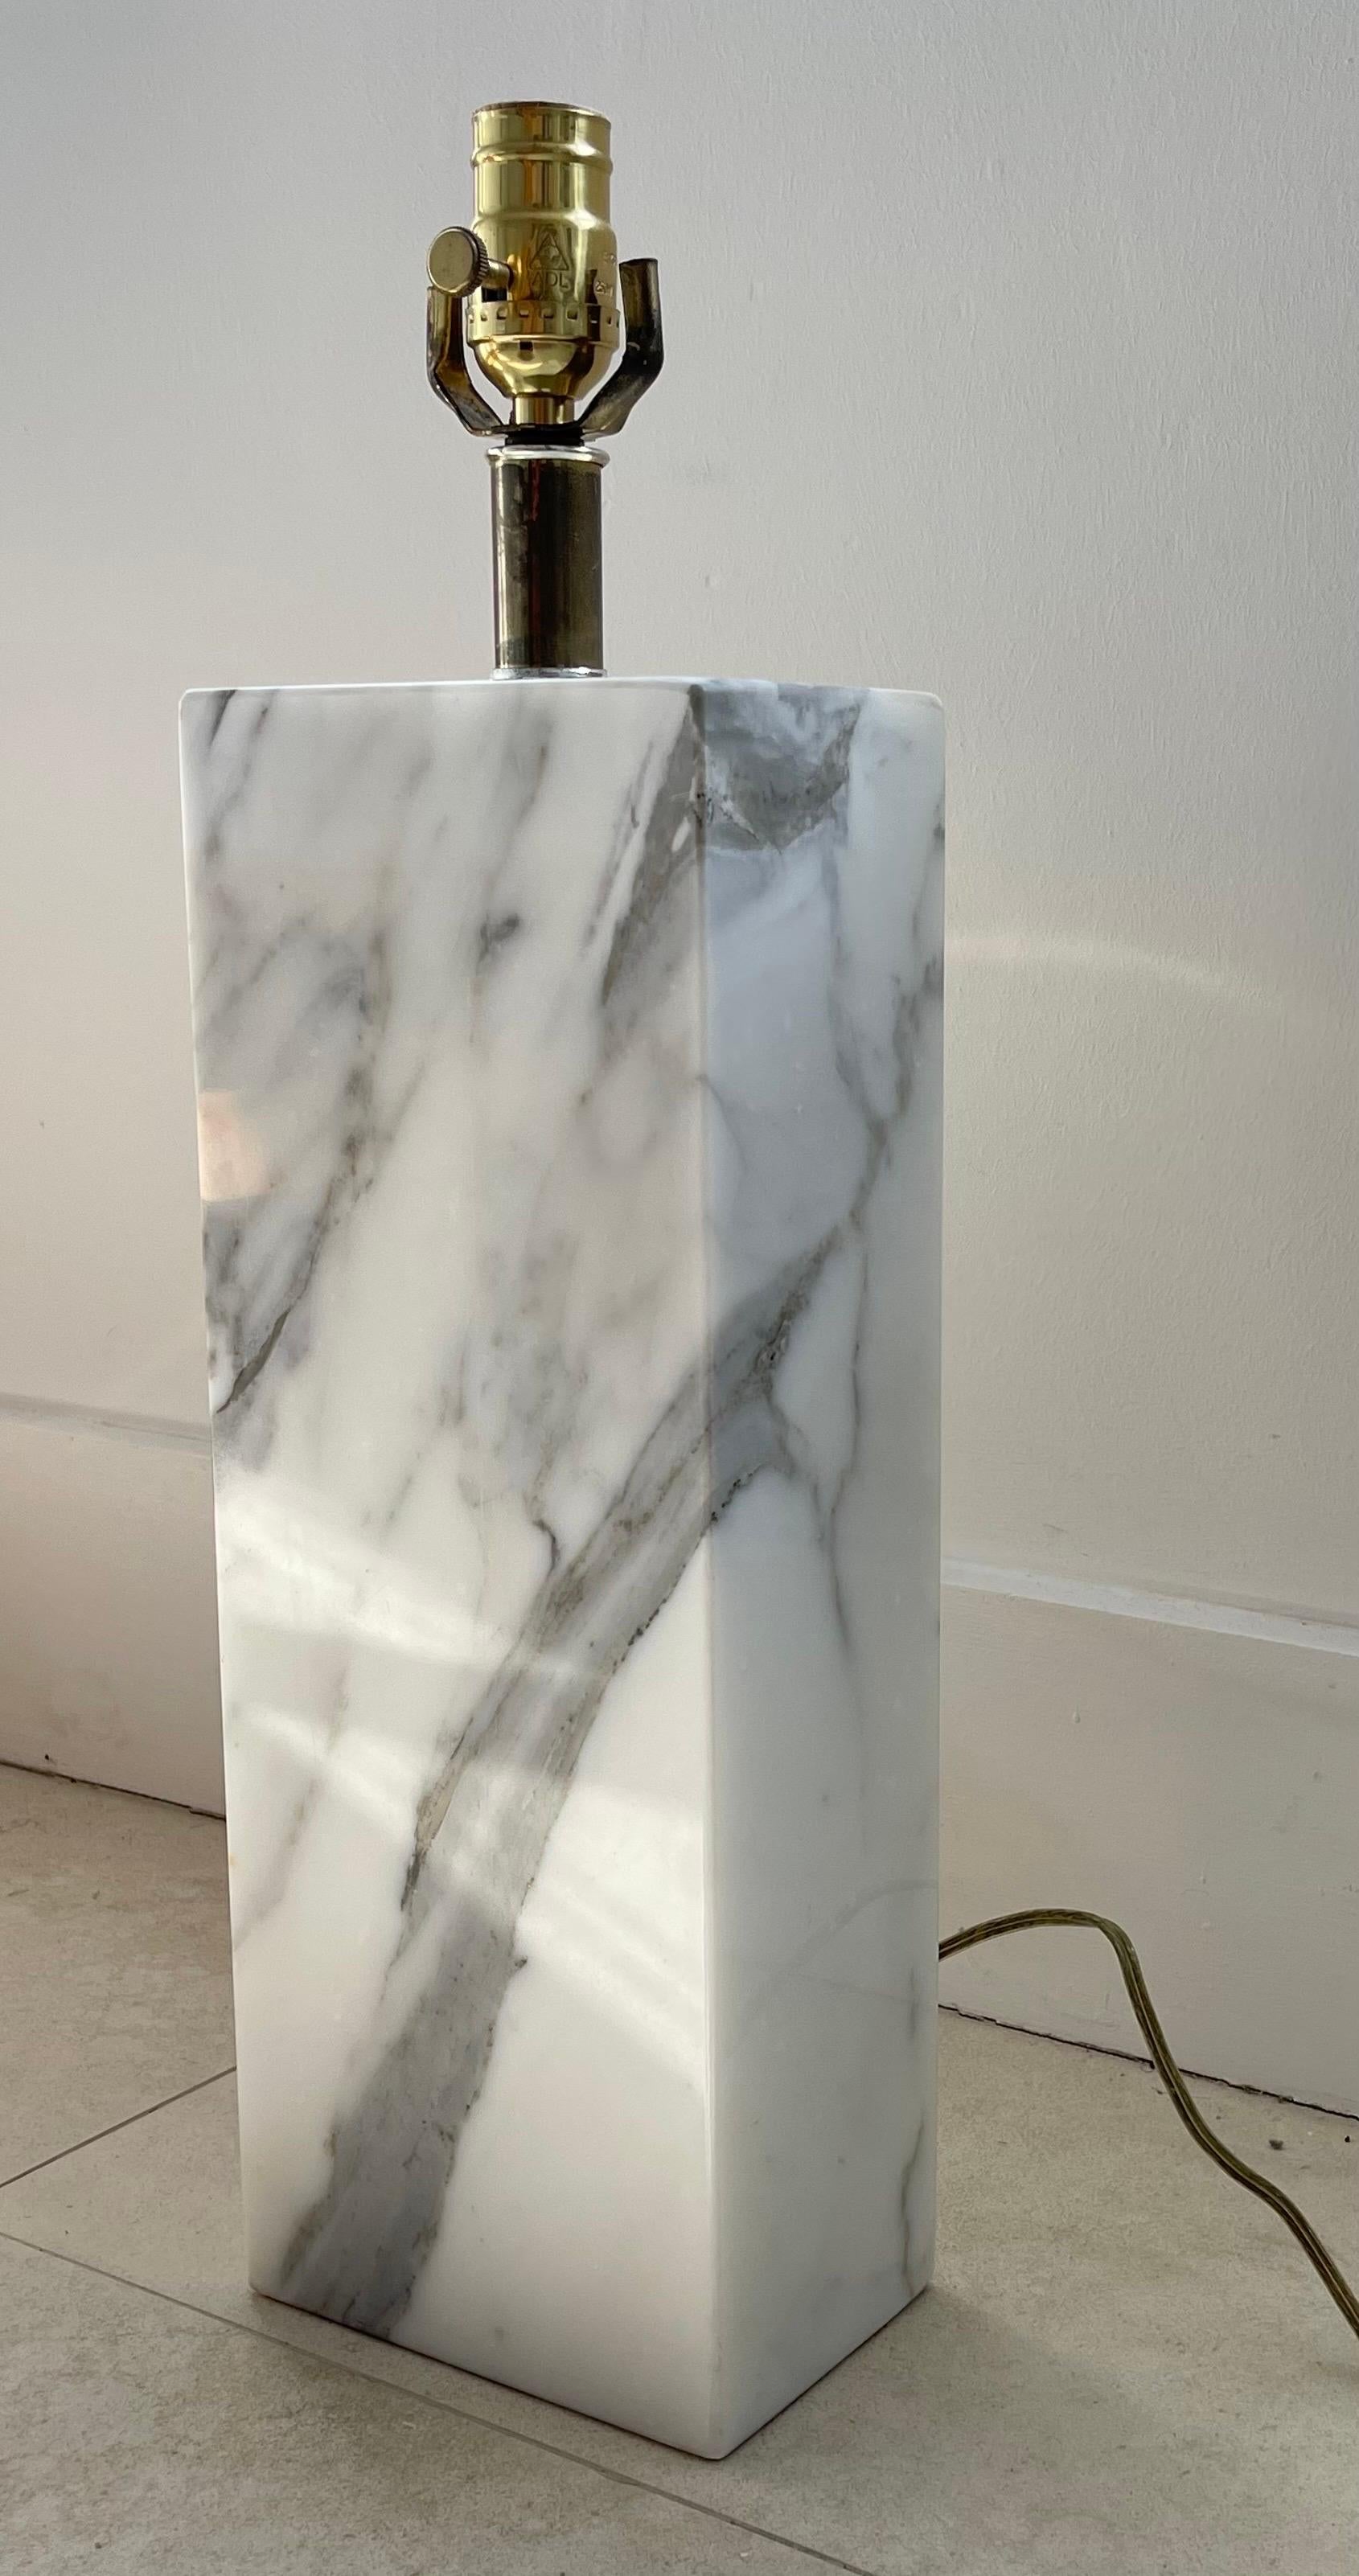 Lampe de table monolithique en marbre statuaire, réalisée dans une plaque massive de marbre statuaire poli avec des fixations en laiton, conçue par Elizabeth Kauffer pour NESSEN Studio LIGHTING, vers les années 1950.

Cette lampe est l'une des